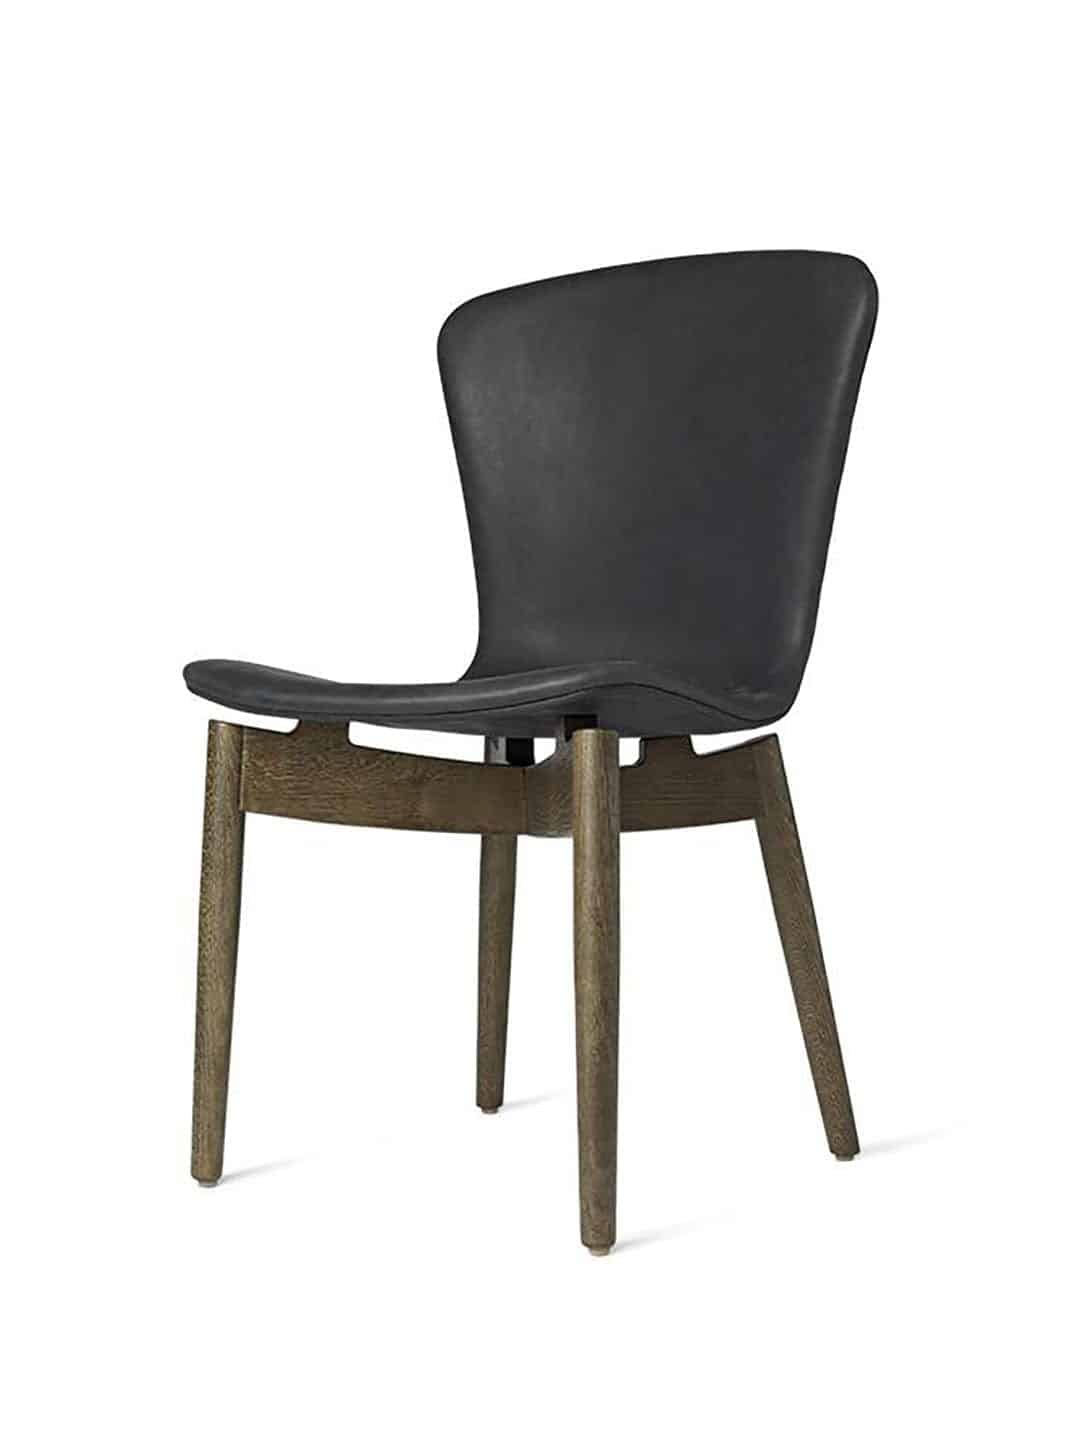 Обеденный стул Mater Shell, серый дуб угольно-черного цвета вид сбоку на белом фоне